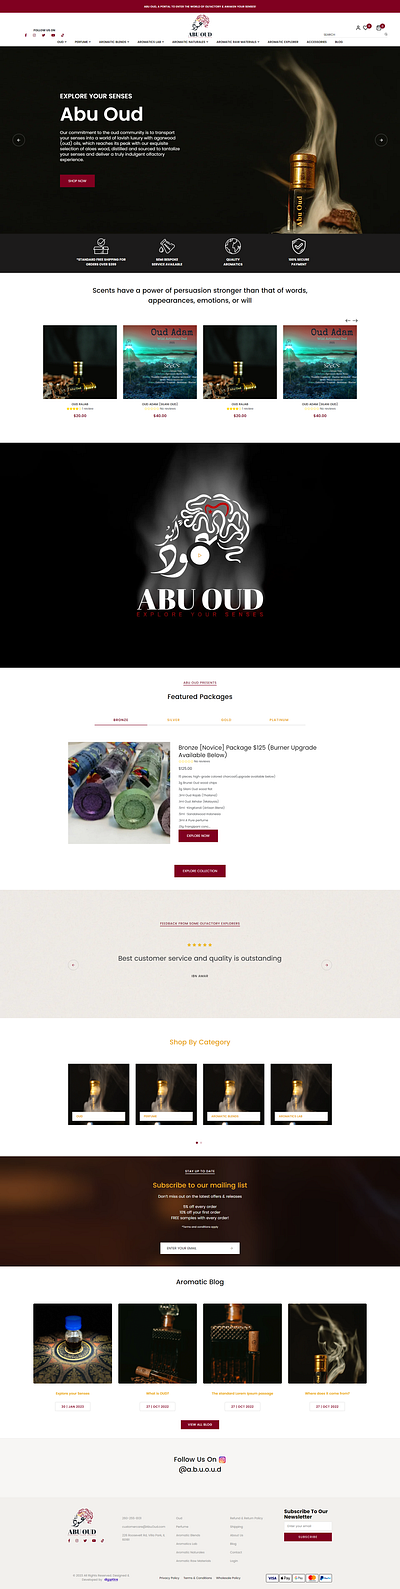 Abu Oud Website branding design uiux web deisgn